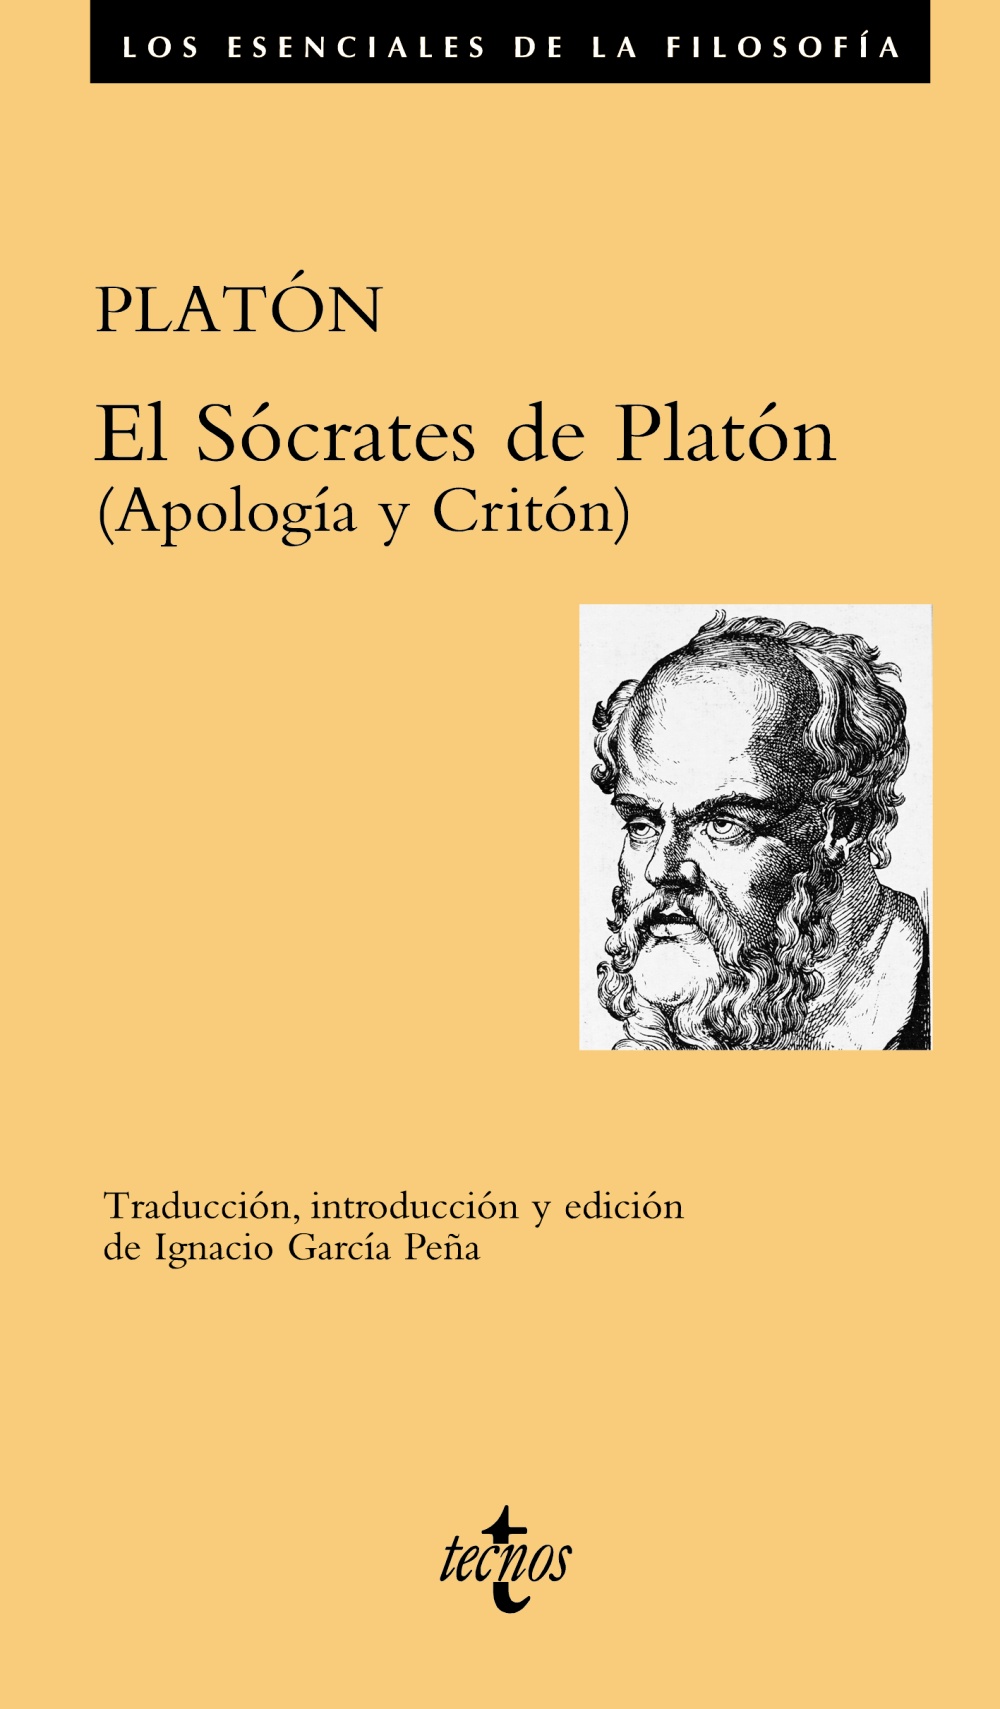 Sócrates de Platón, El "Apología y Critón"